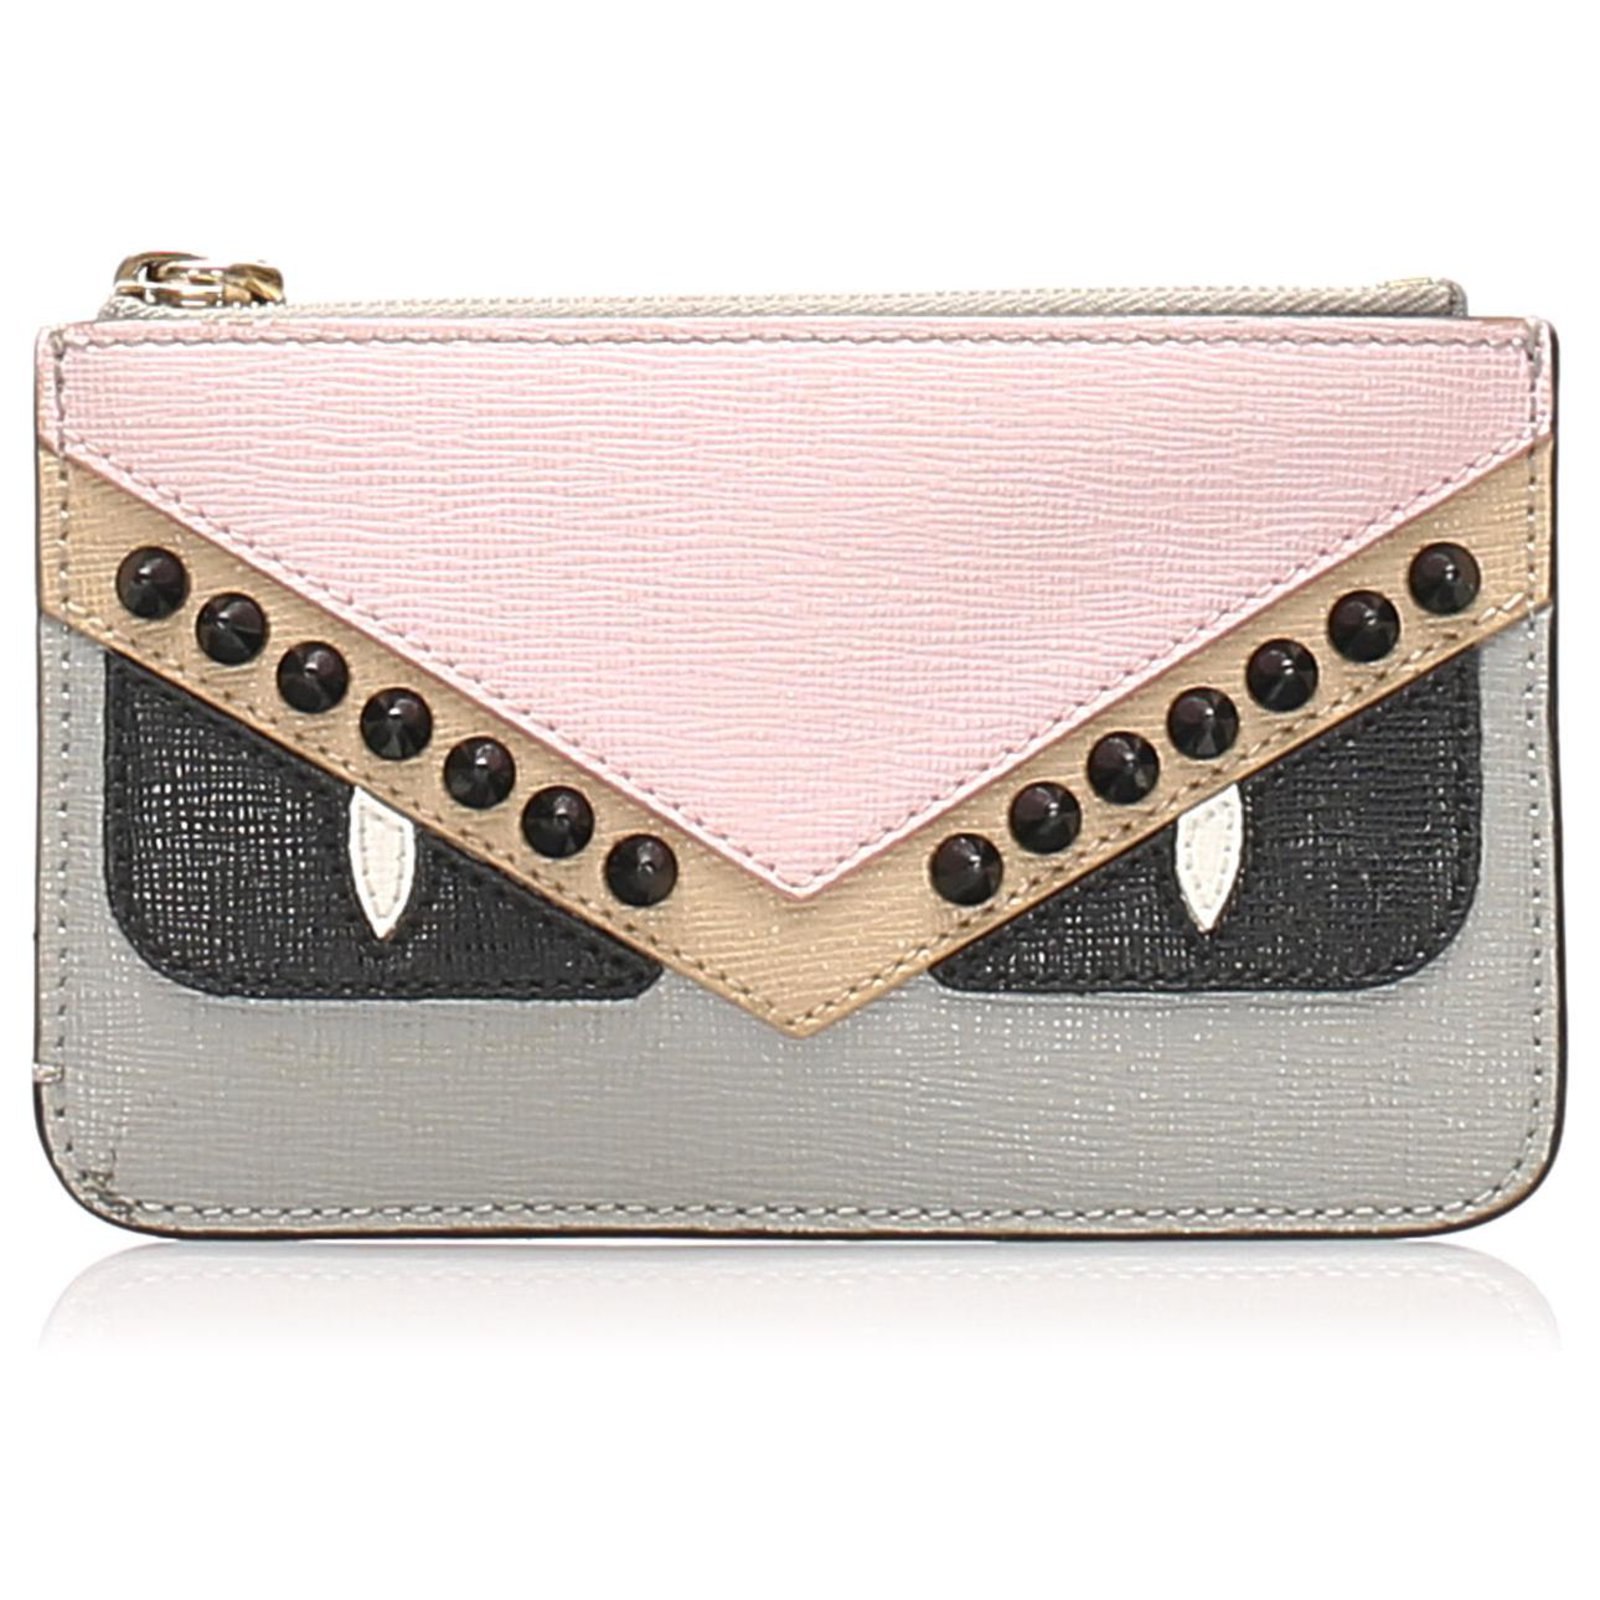 pink fendi purse